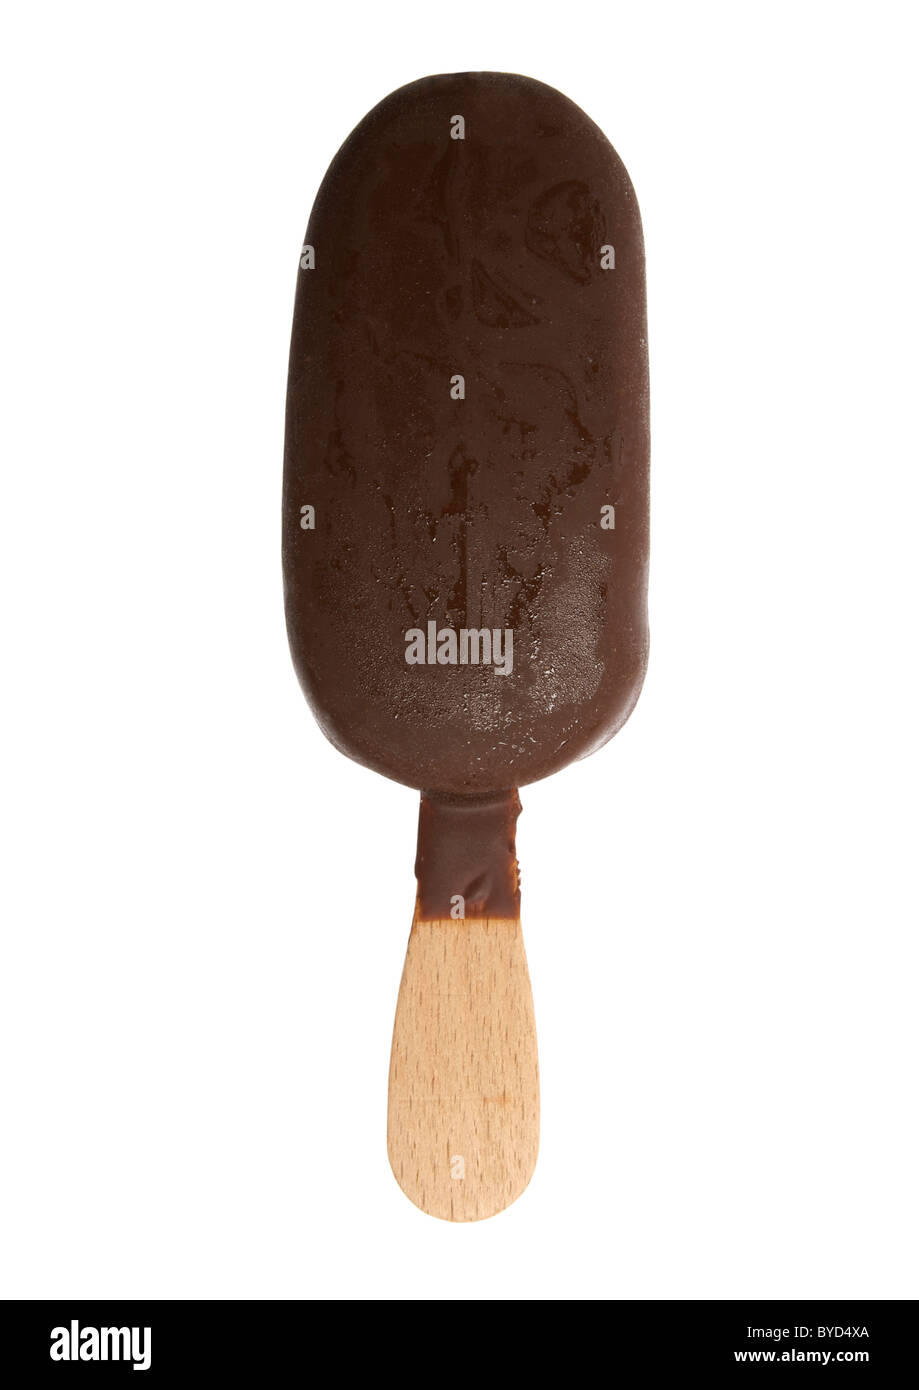 Schokolade Eis am Stiel auf weißem Hintergrund Stockfoto